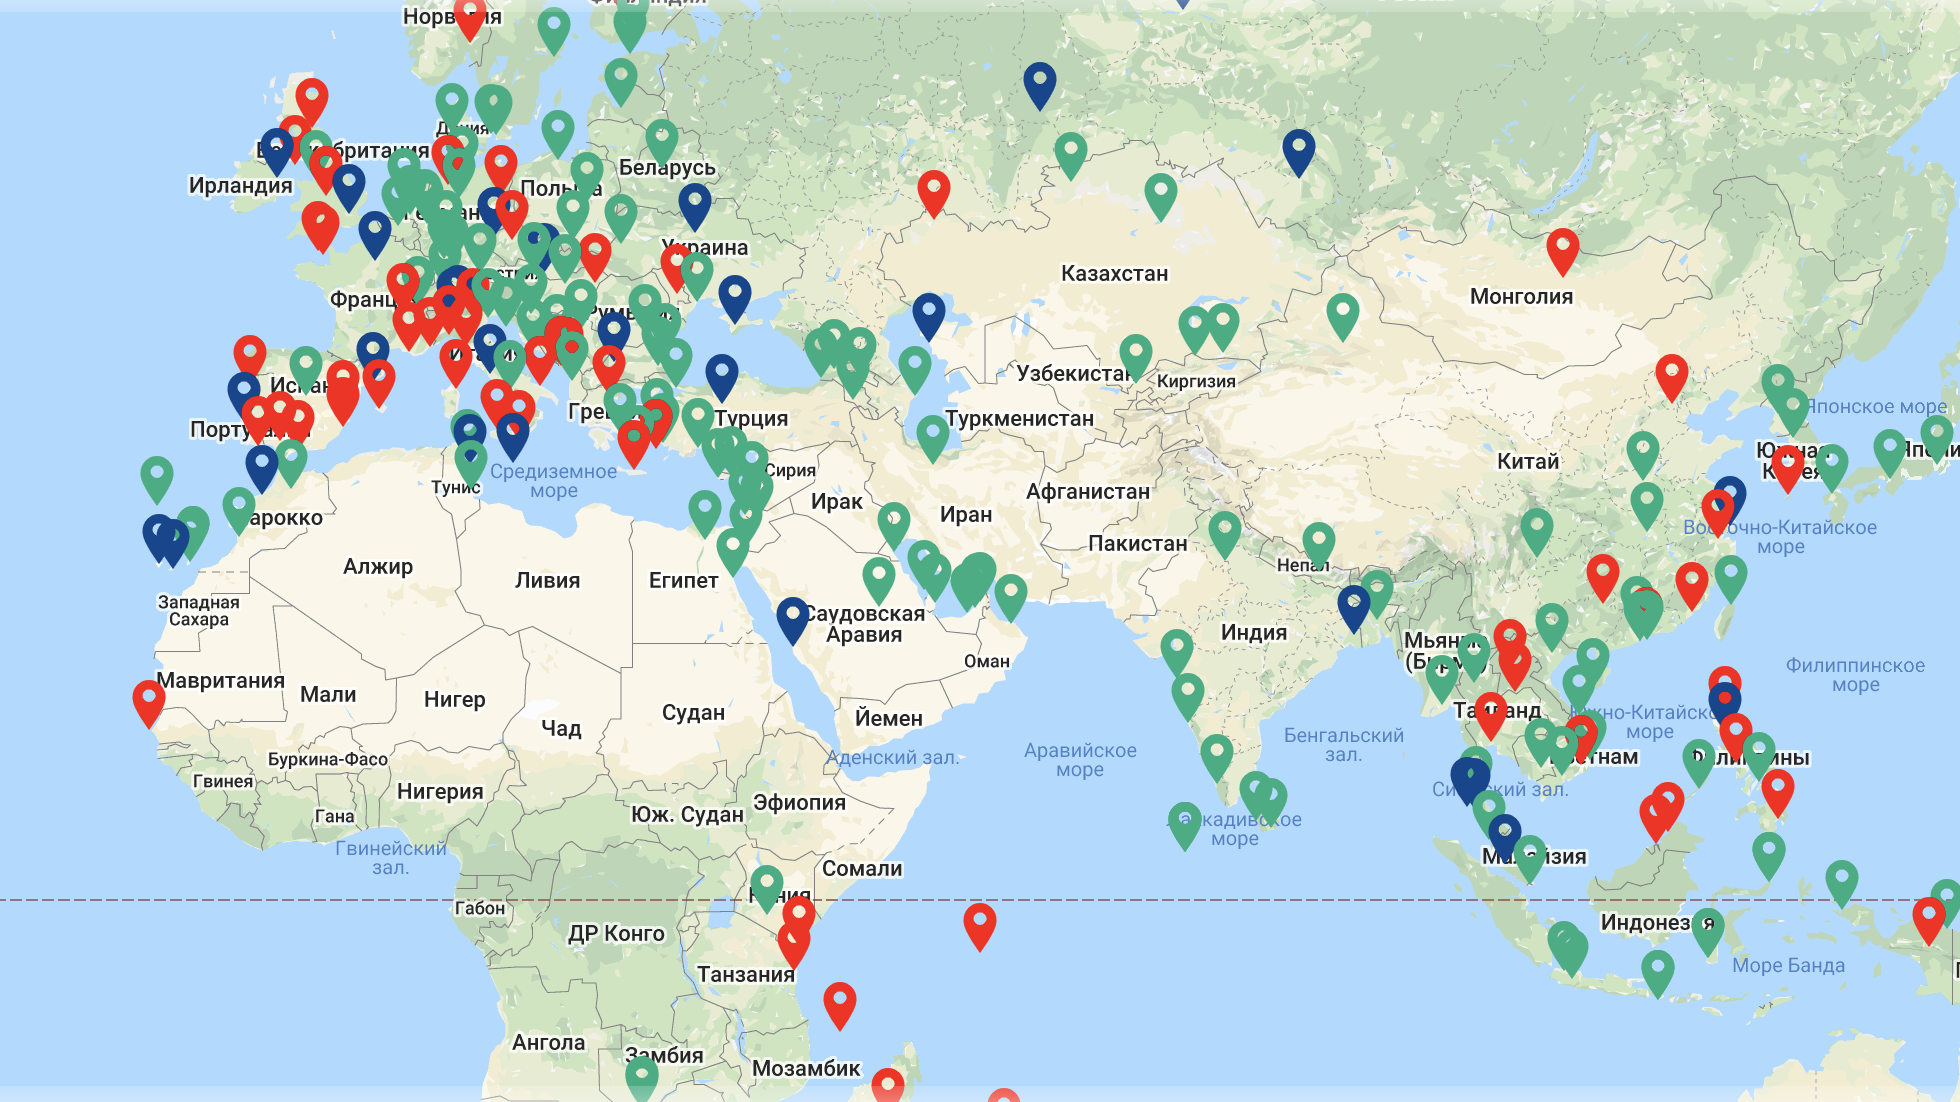 Вьетнамские аэропорты: описание, расположение, маршруты на карте